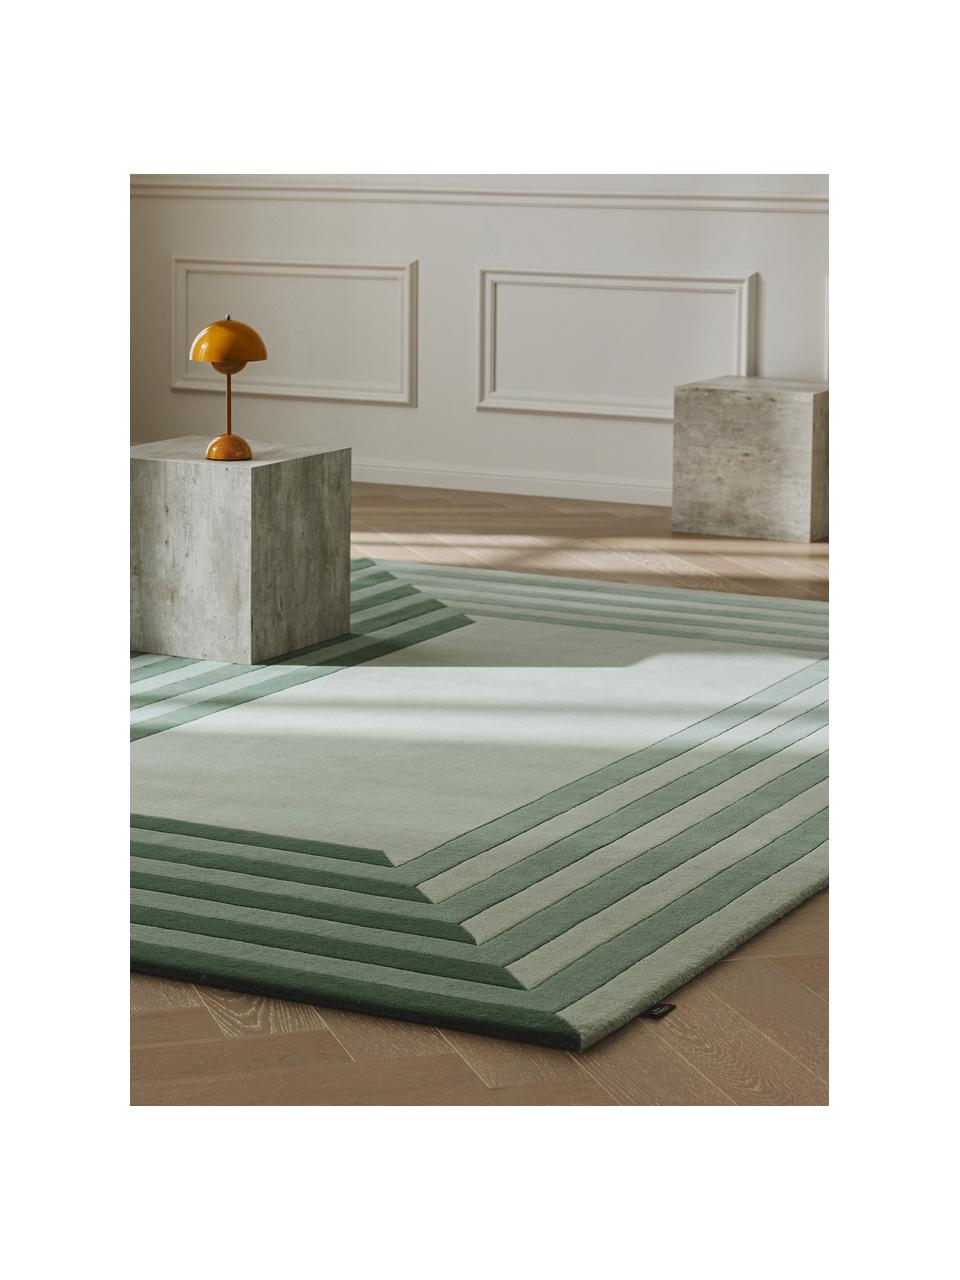 Ručne tuftovaný vlnený koberec Tilo, 100 % vlna

V prvých týždňoch používania môžu vlnené koberce uvoľňovať vlákna, tento jav zmizne po niekoľkých týždňoch používania, Odtiene zelenej, Ø 160 x V 230 cm (veľkosť XL)